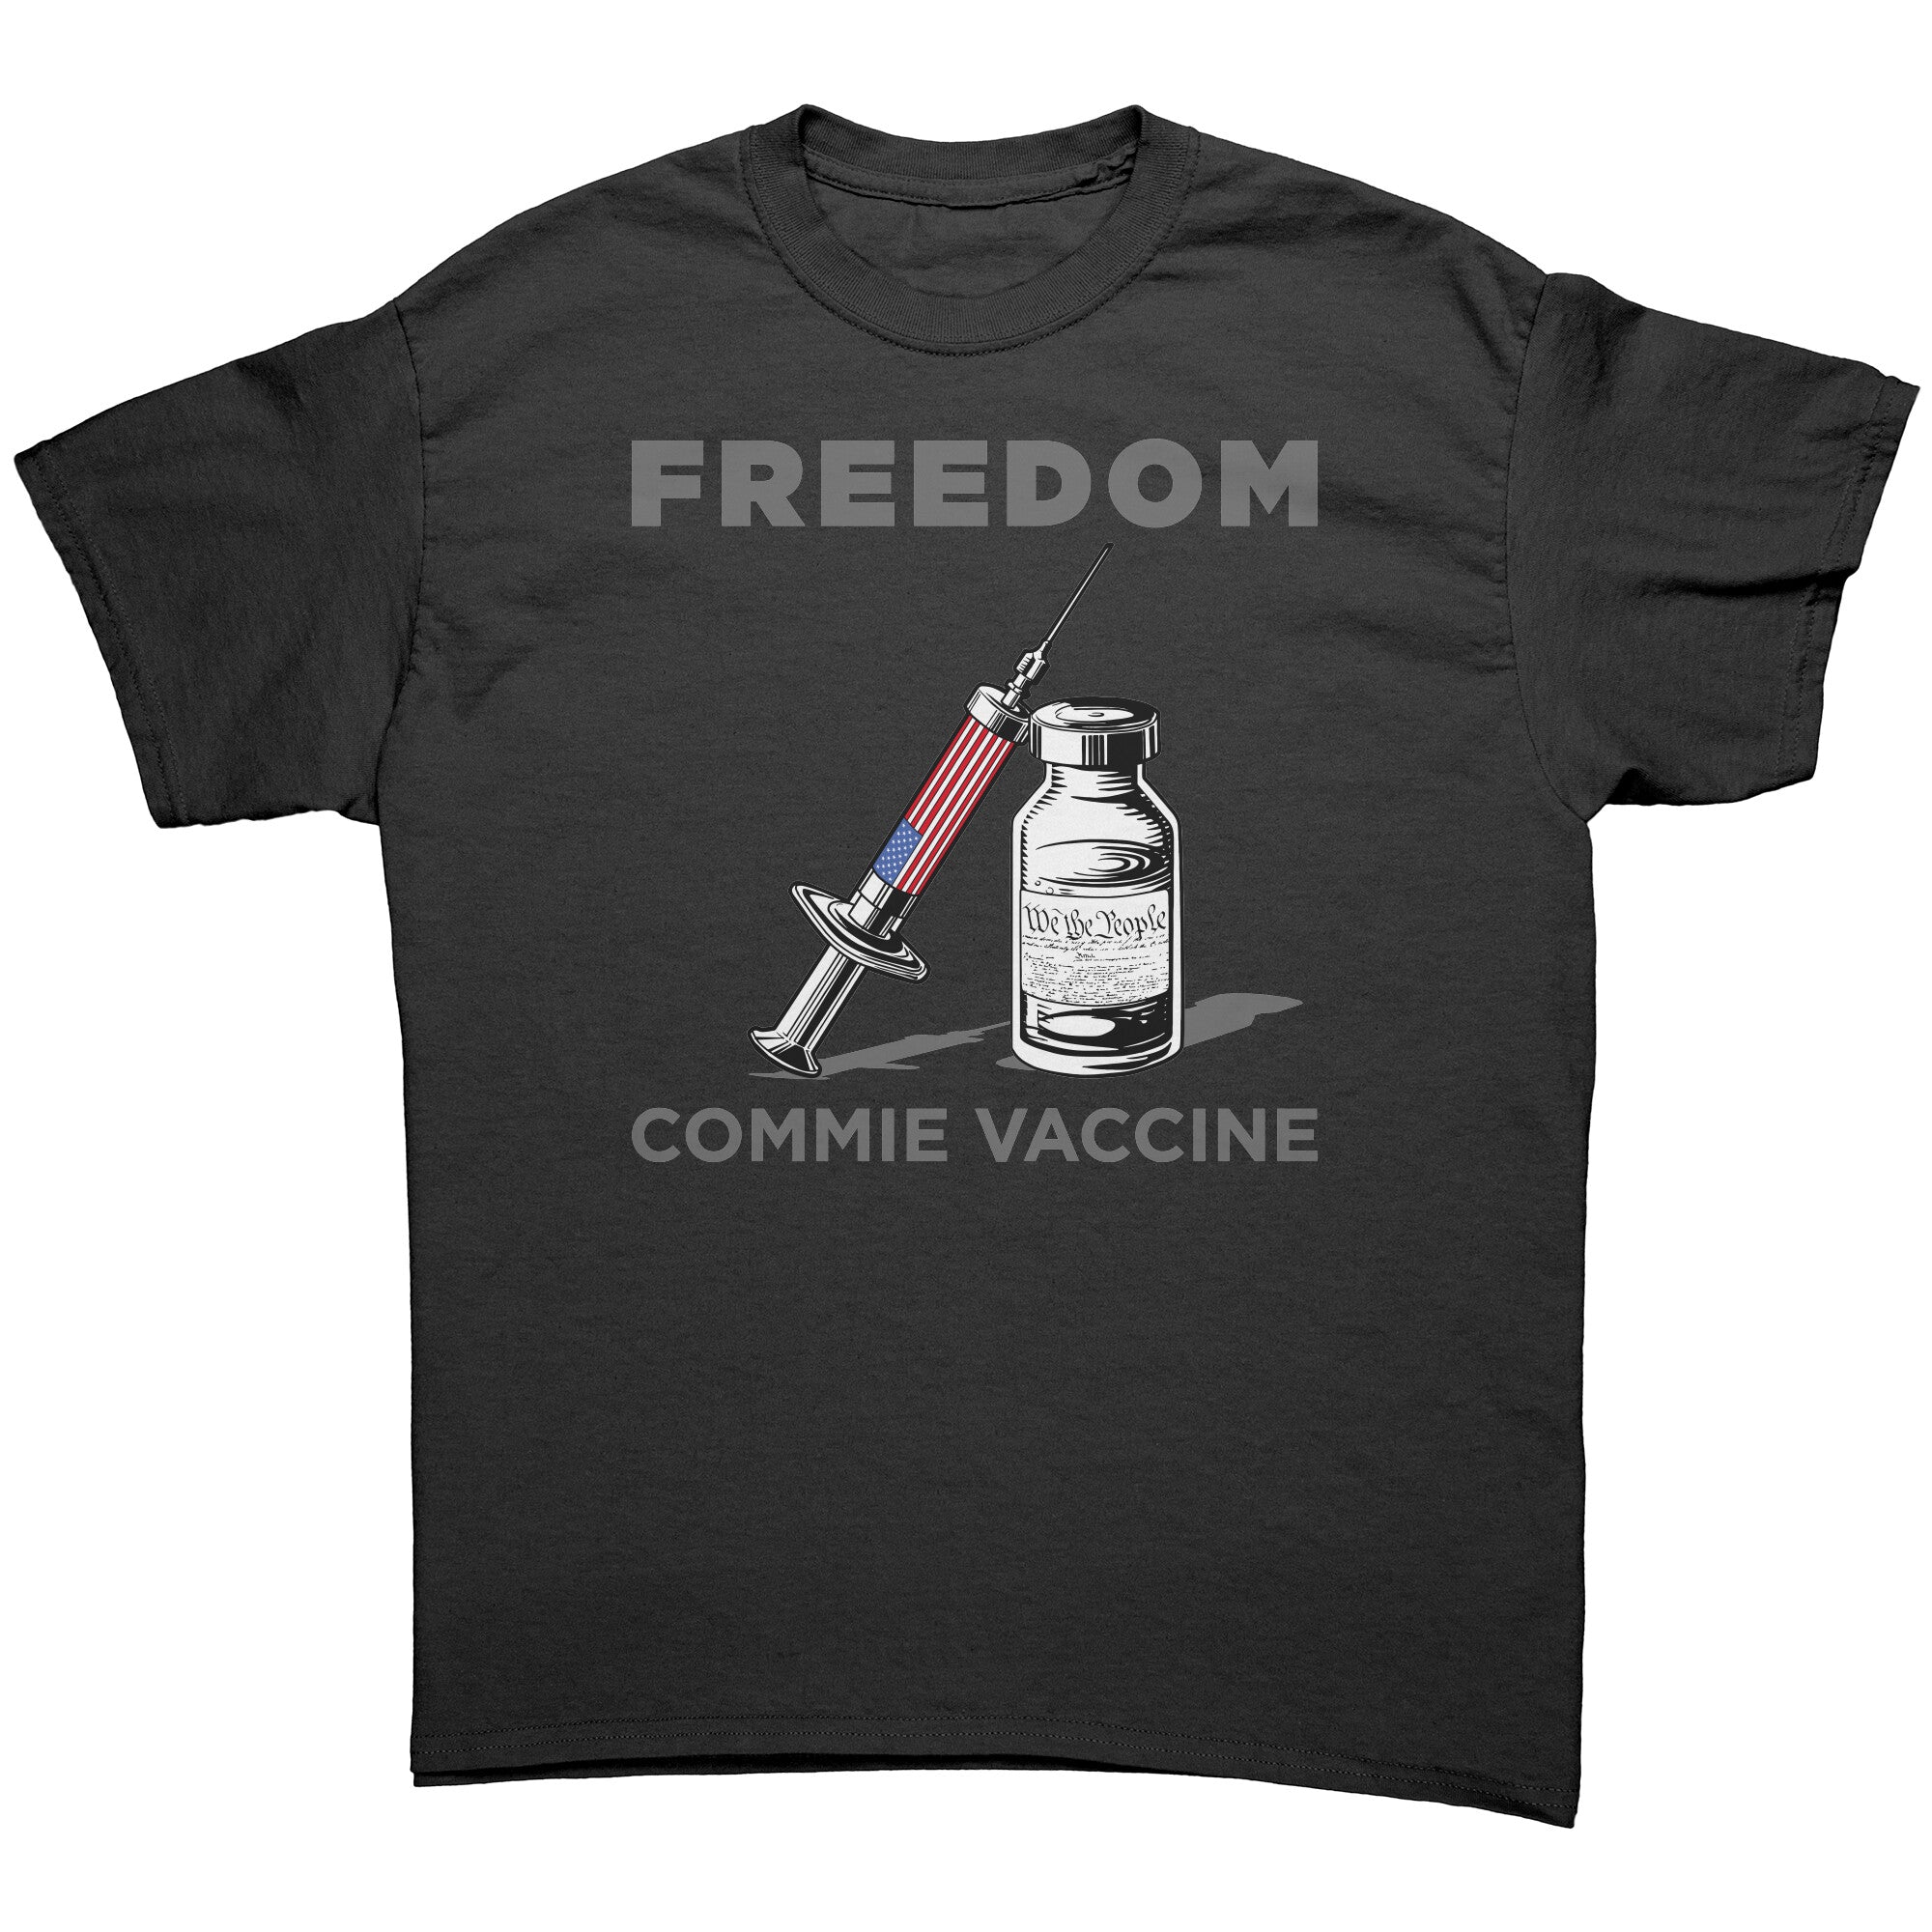 Freedom Commie Vaccine Men's